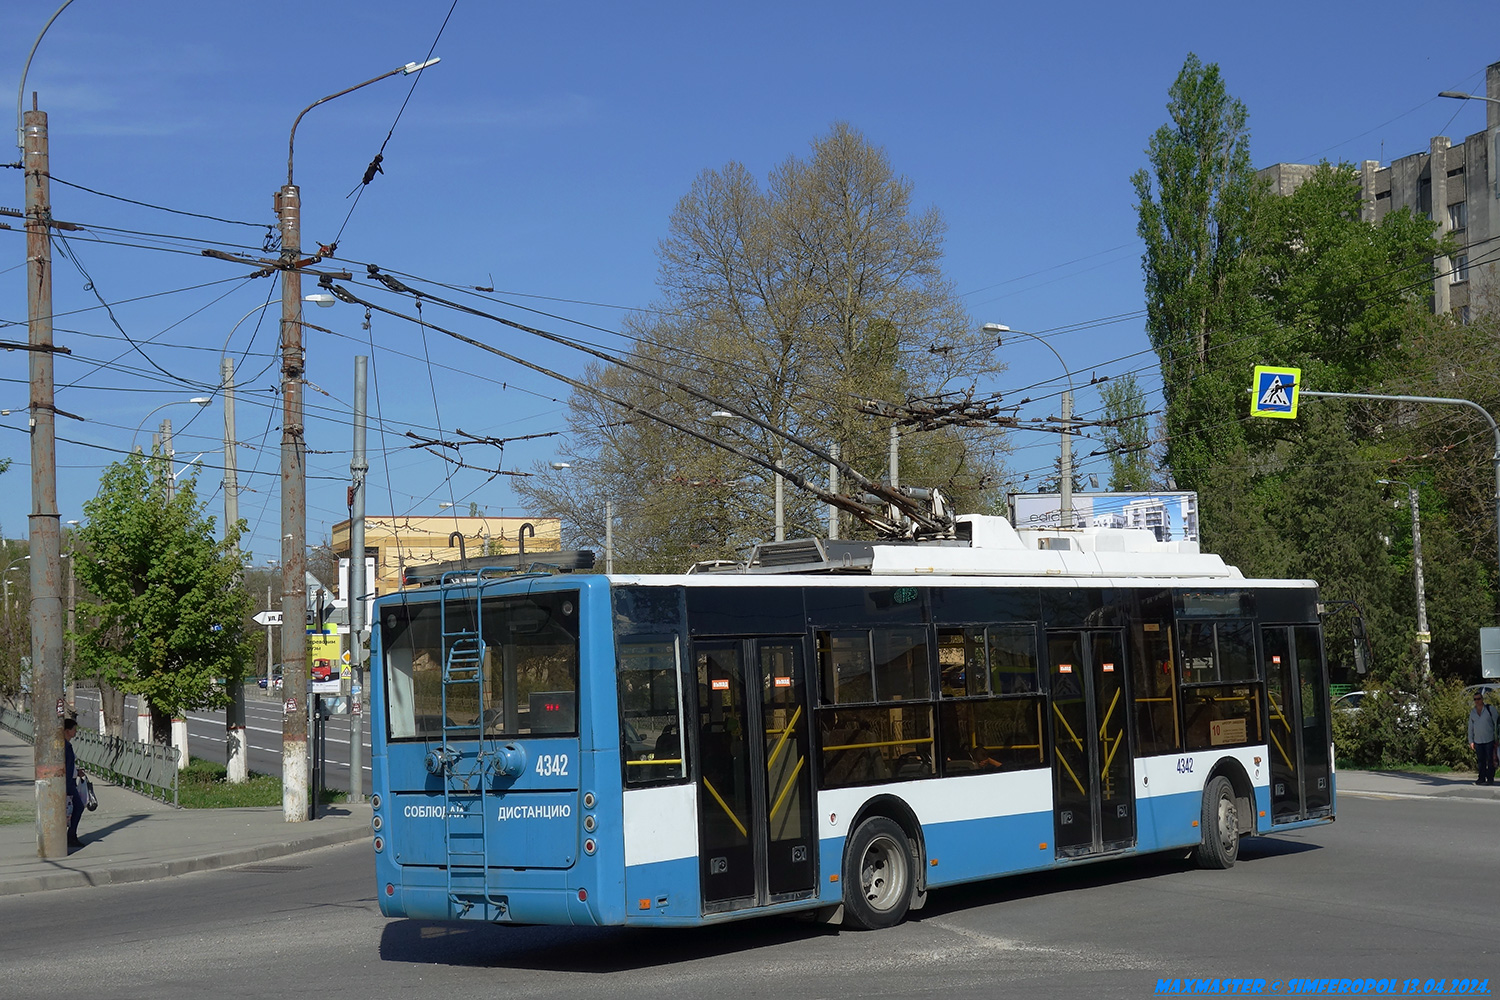 Crimean trolleybus, Bogdan T70110 № 4342